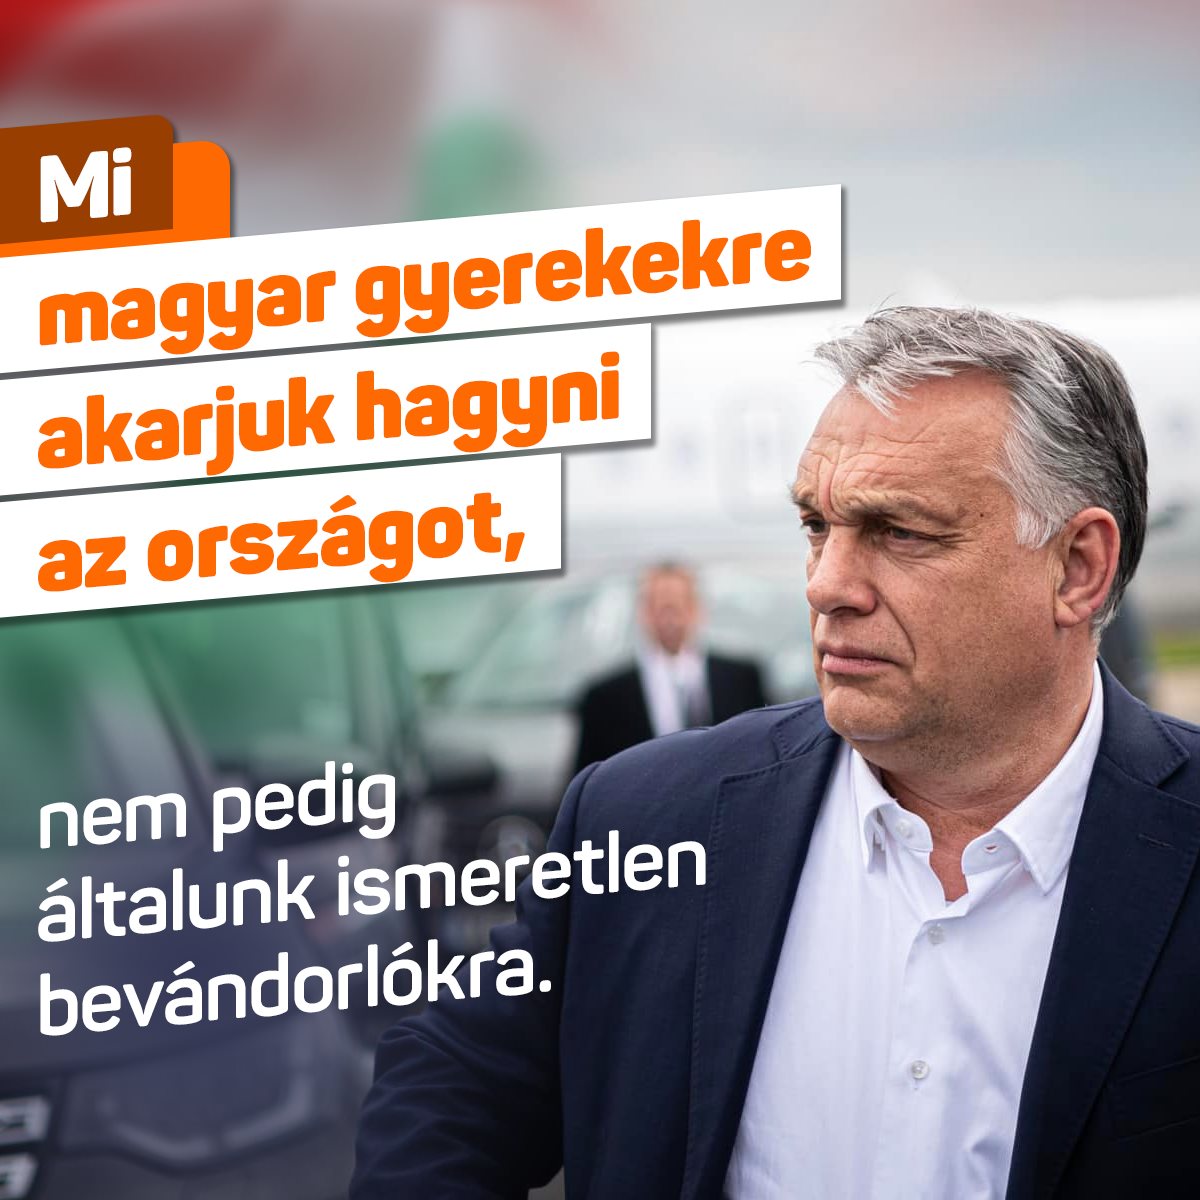 Orbán Viktor – Mi magyar gyerekekre akarjuk hagyni az országot, nem pedig általunk ismeretlen bevándorlókra.